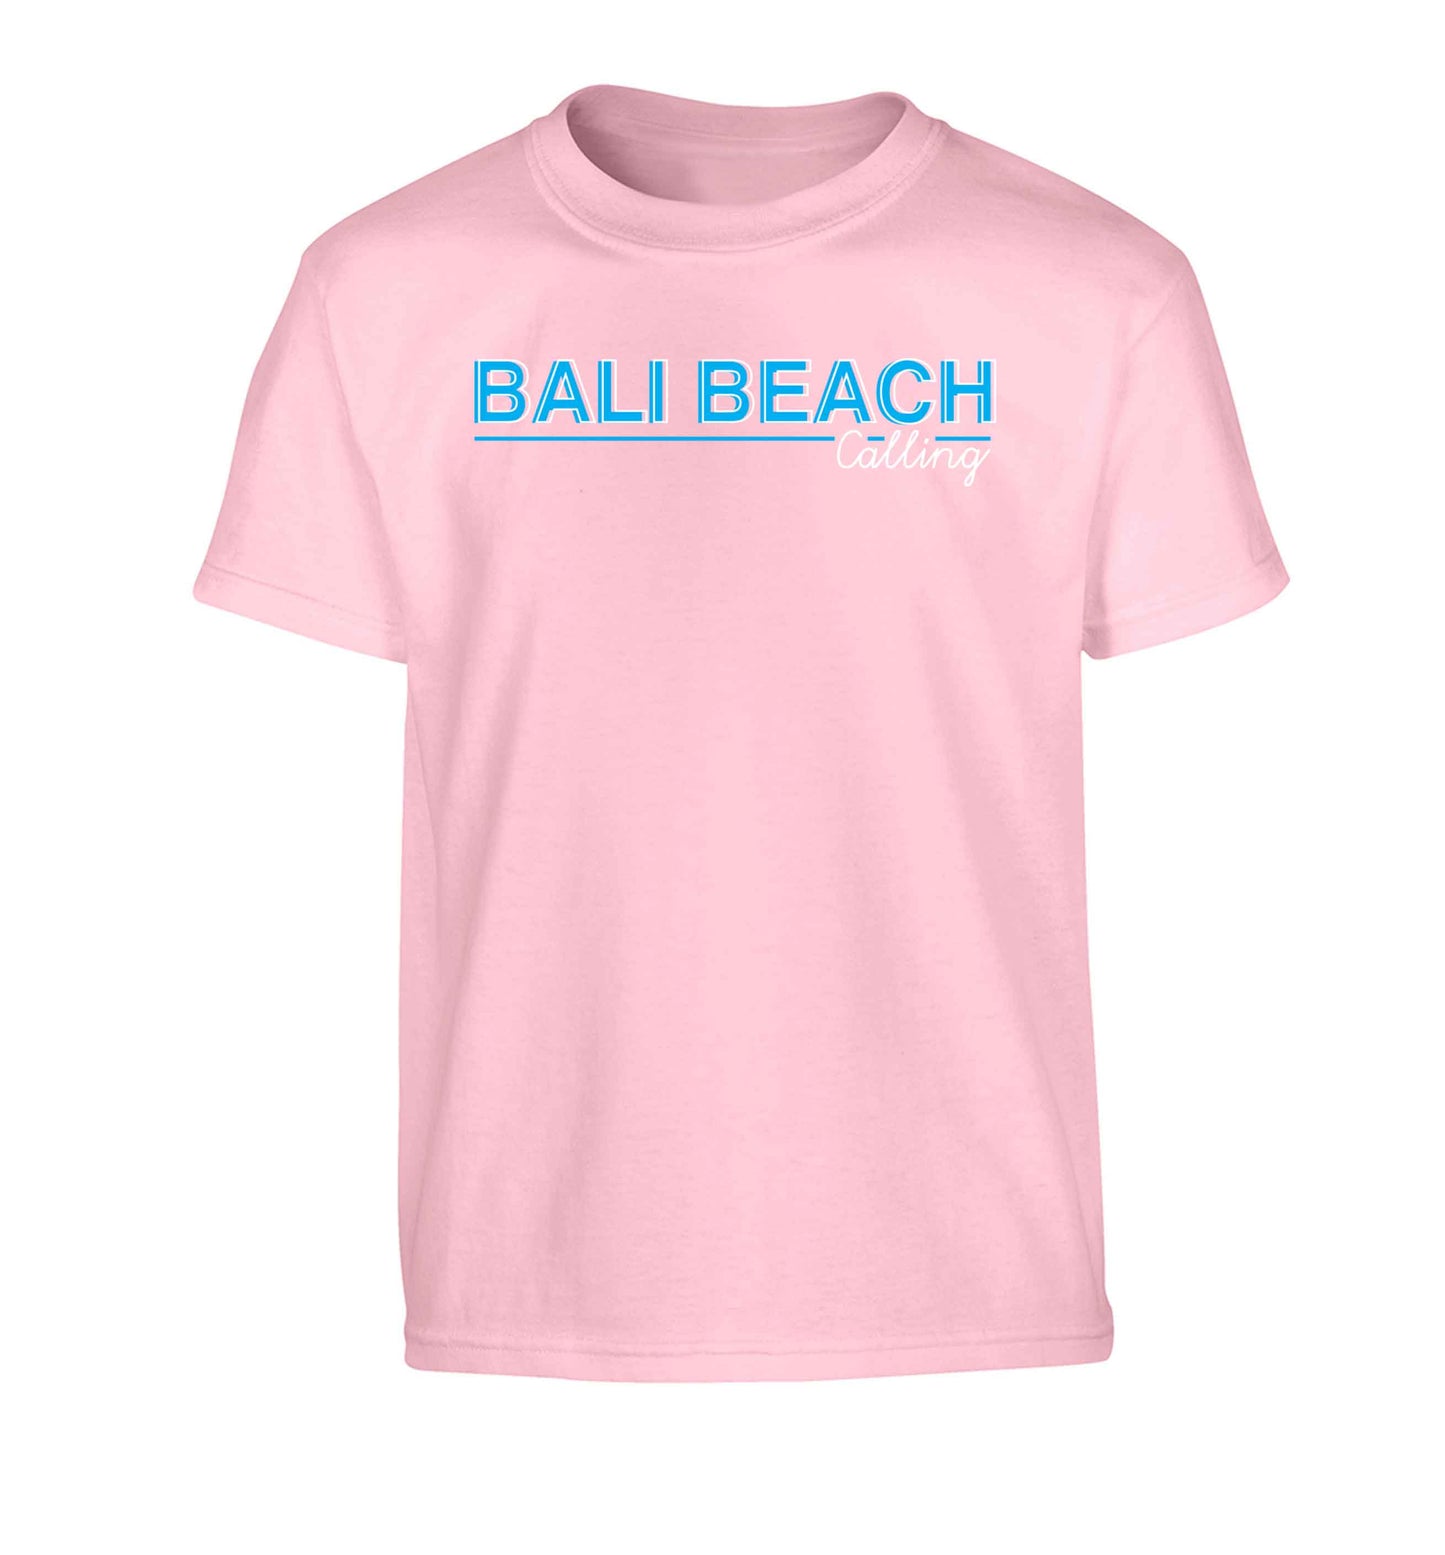 Bali beach calling Children's light pink Tshirt 12-13 Years